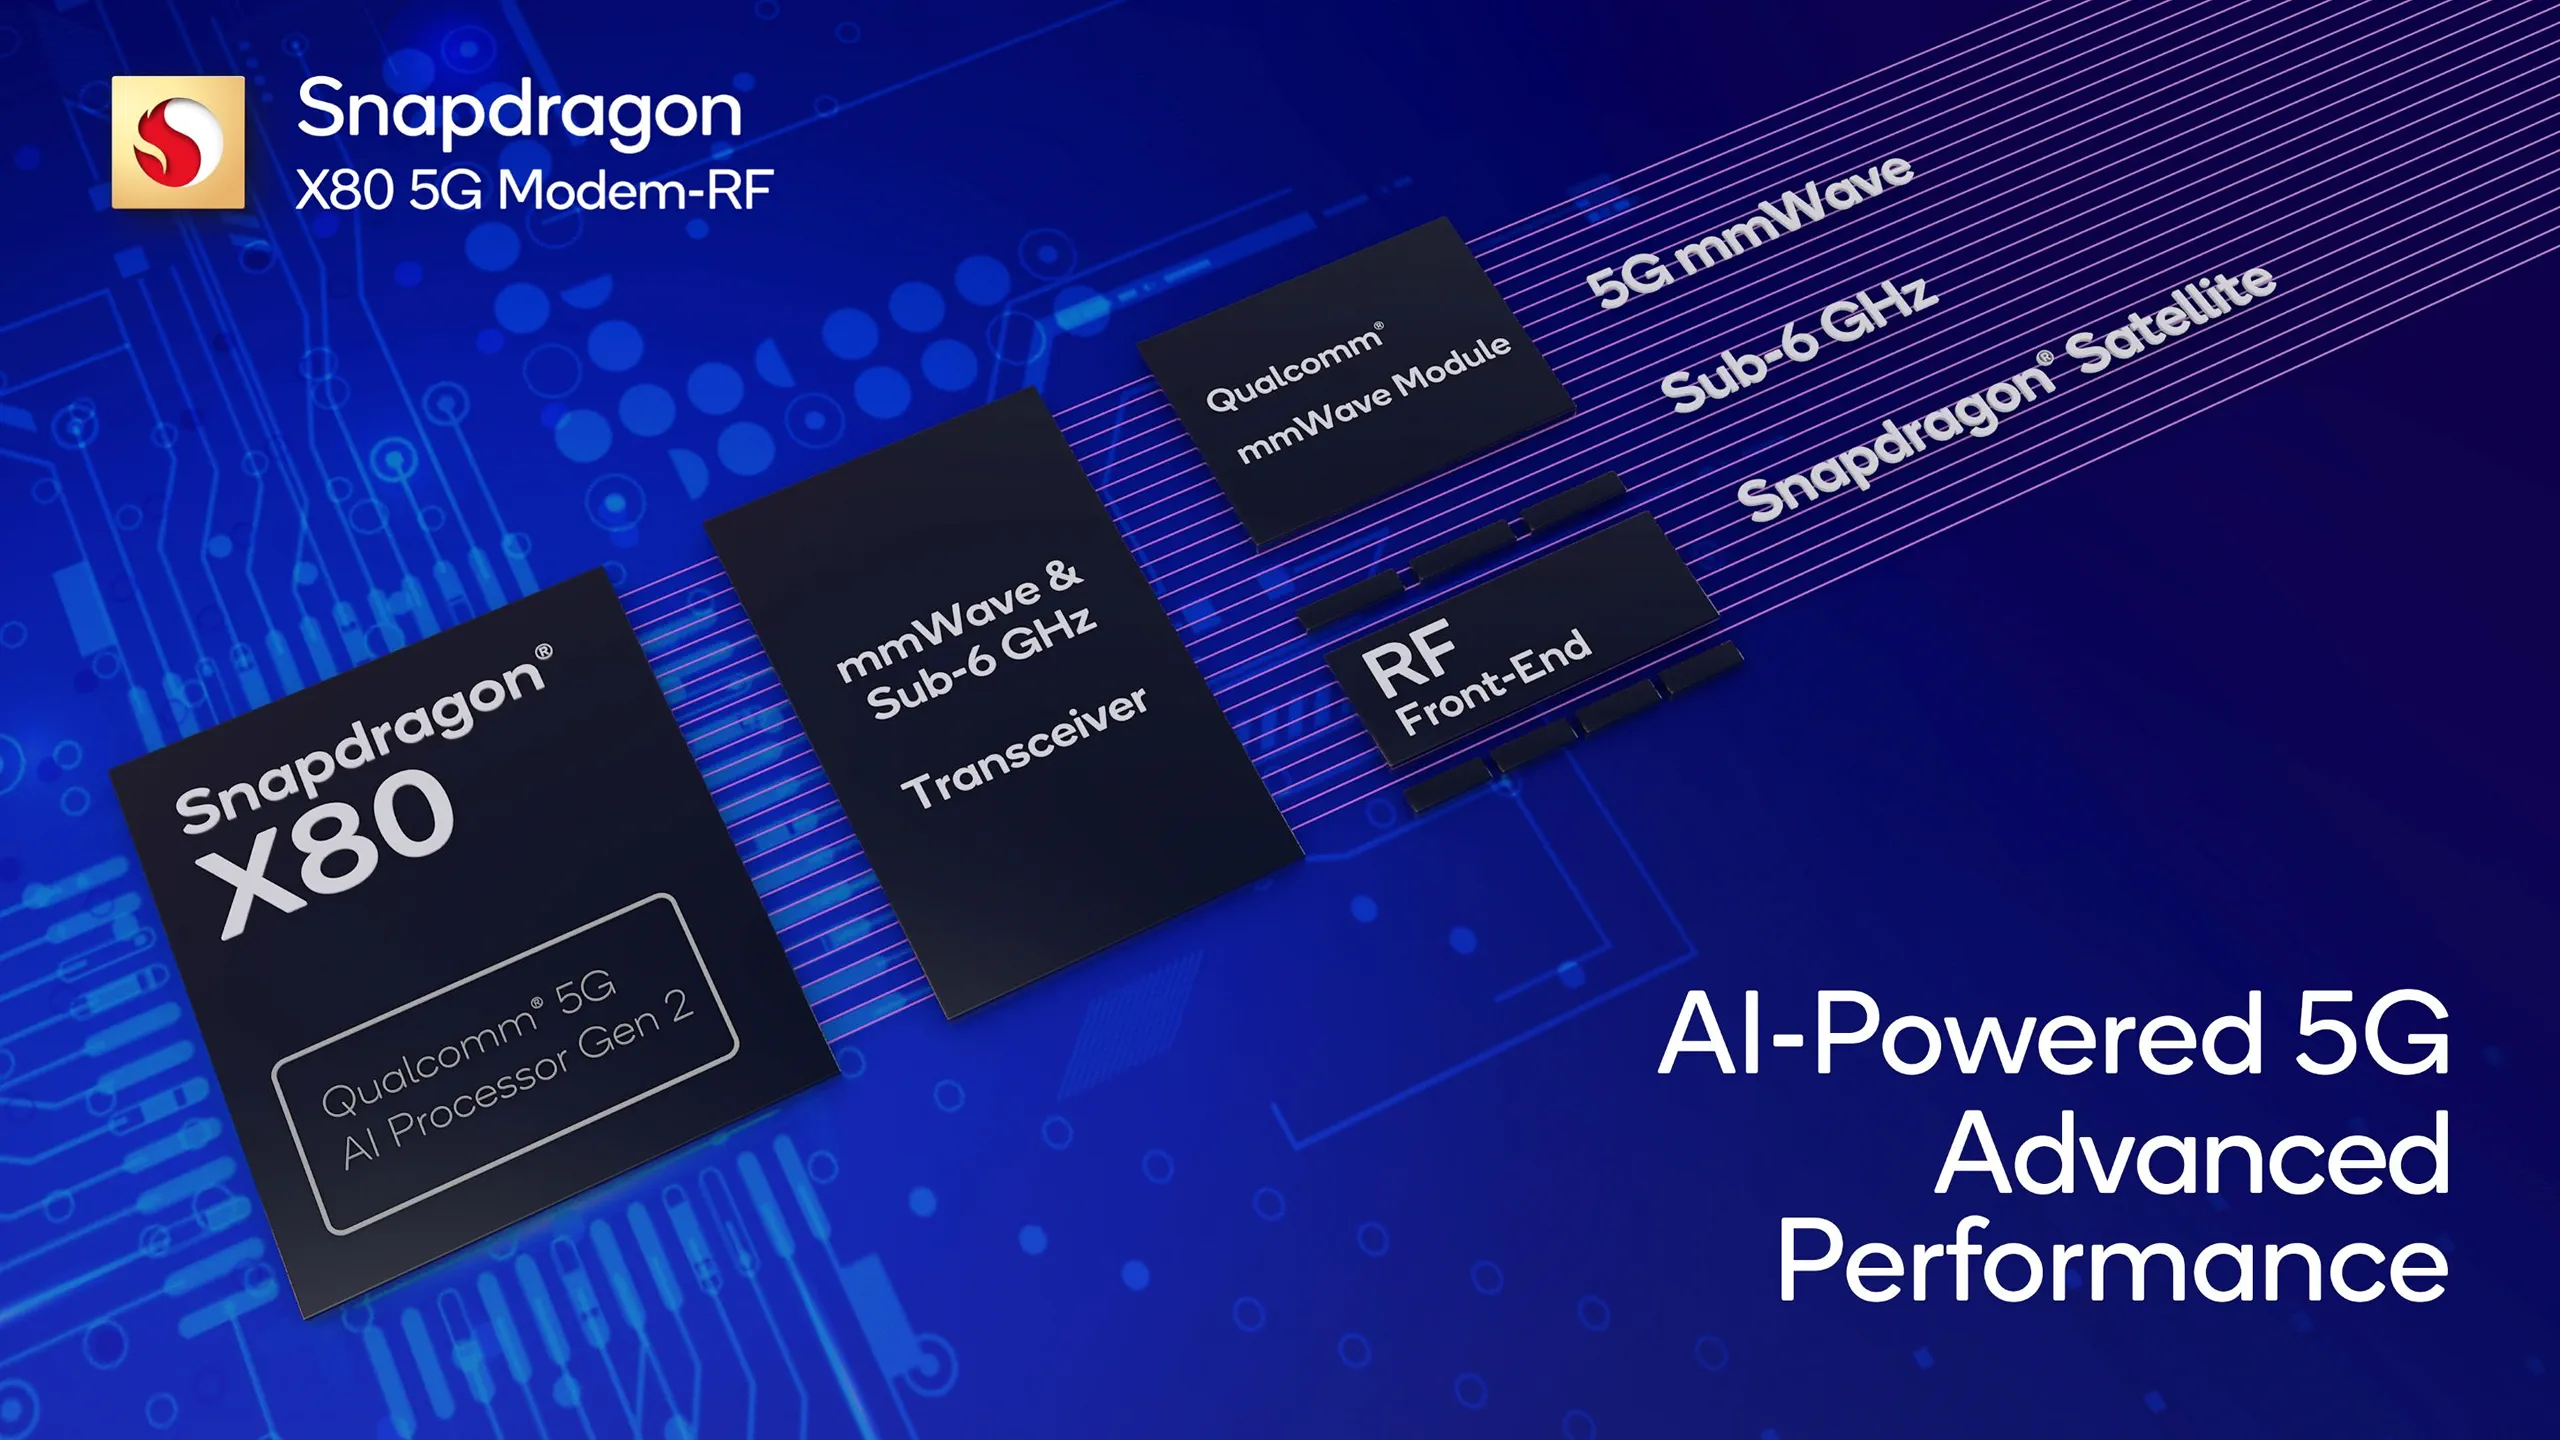 Qualcomm ra mắt Snapdragon X80: Hệ thống modem-RF 5G tích hợp AI